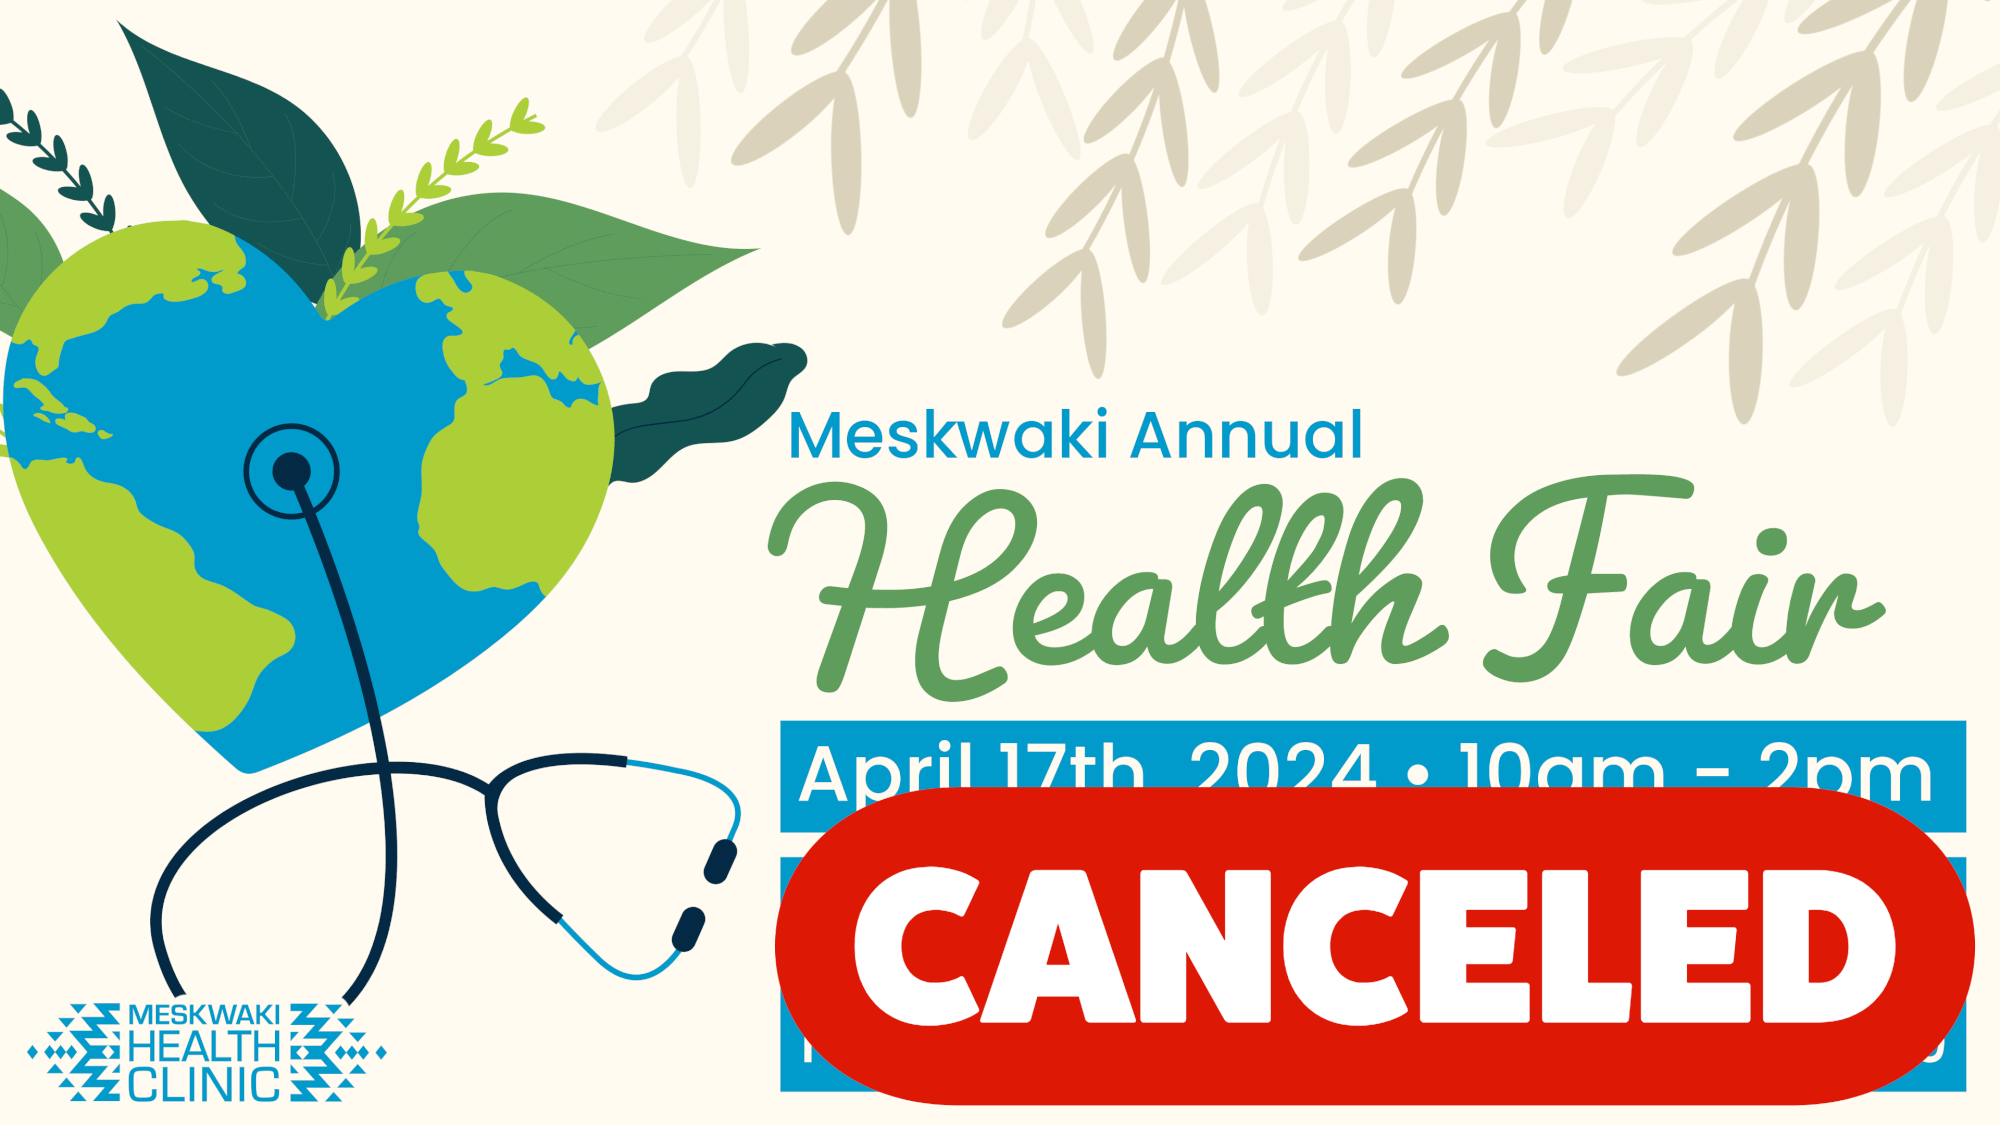 Meskwaki Health Fair Canceled